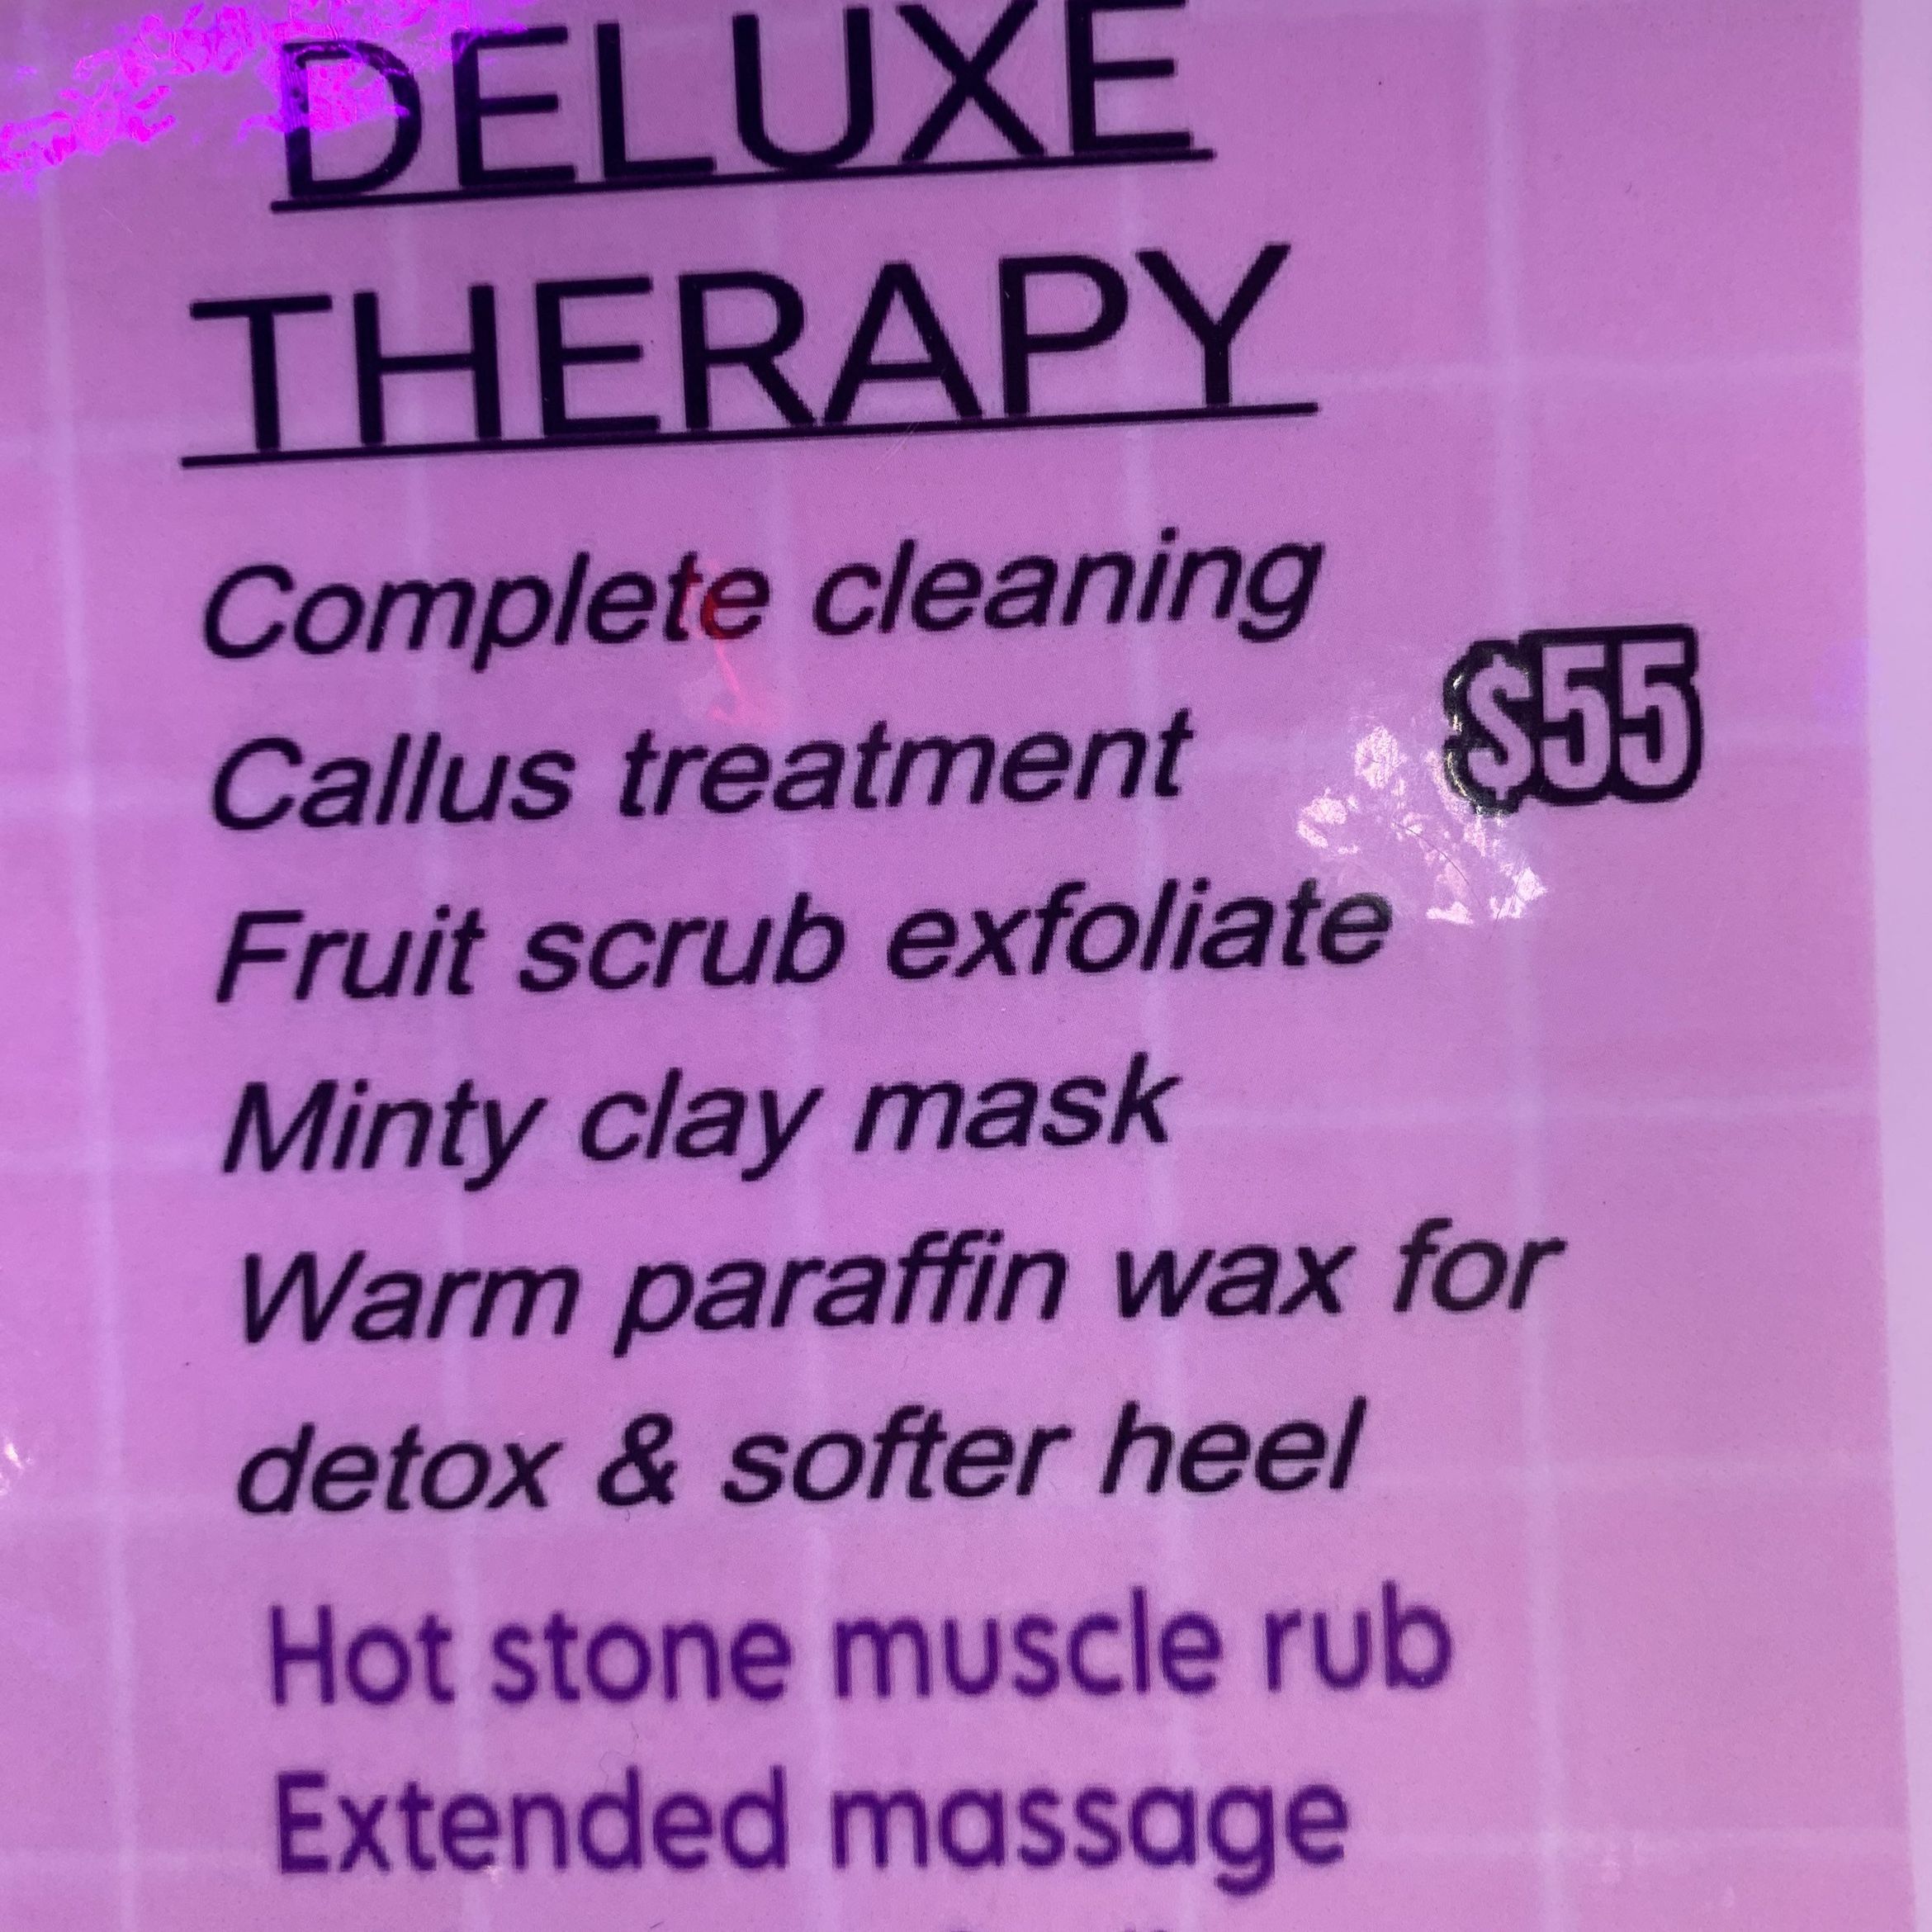 Deluxe Therapy Pedicure portfolio